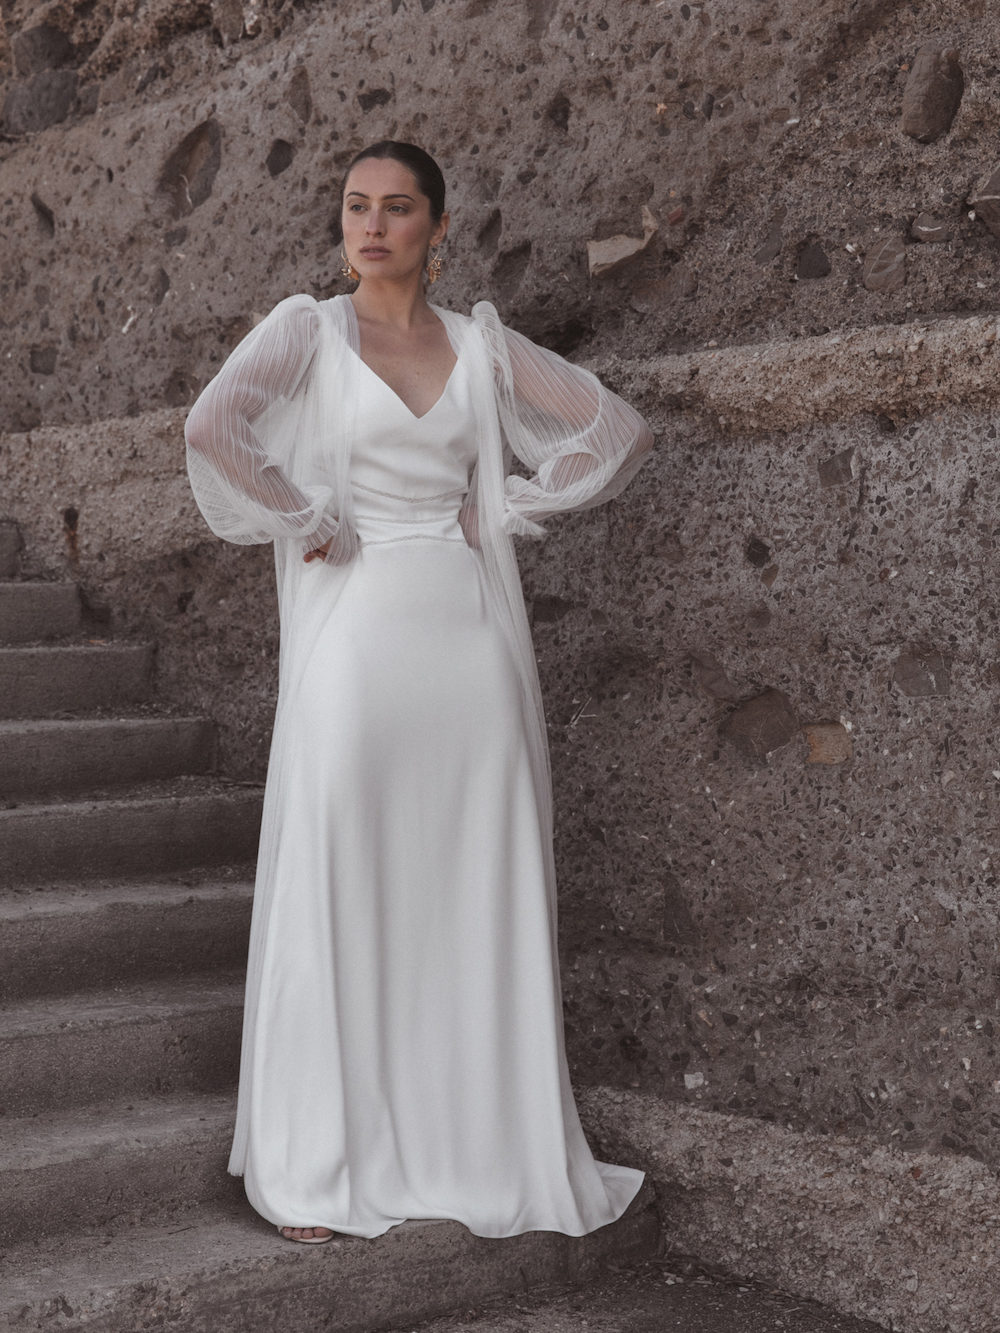 Céline de Monicault Collection 2020 - Robes de mariée - Blog Mariage Madame C